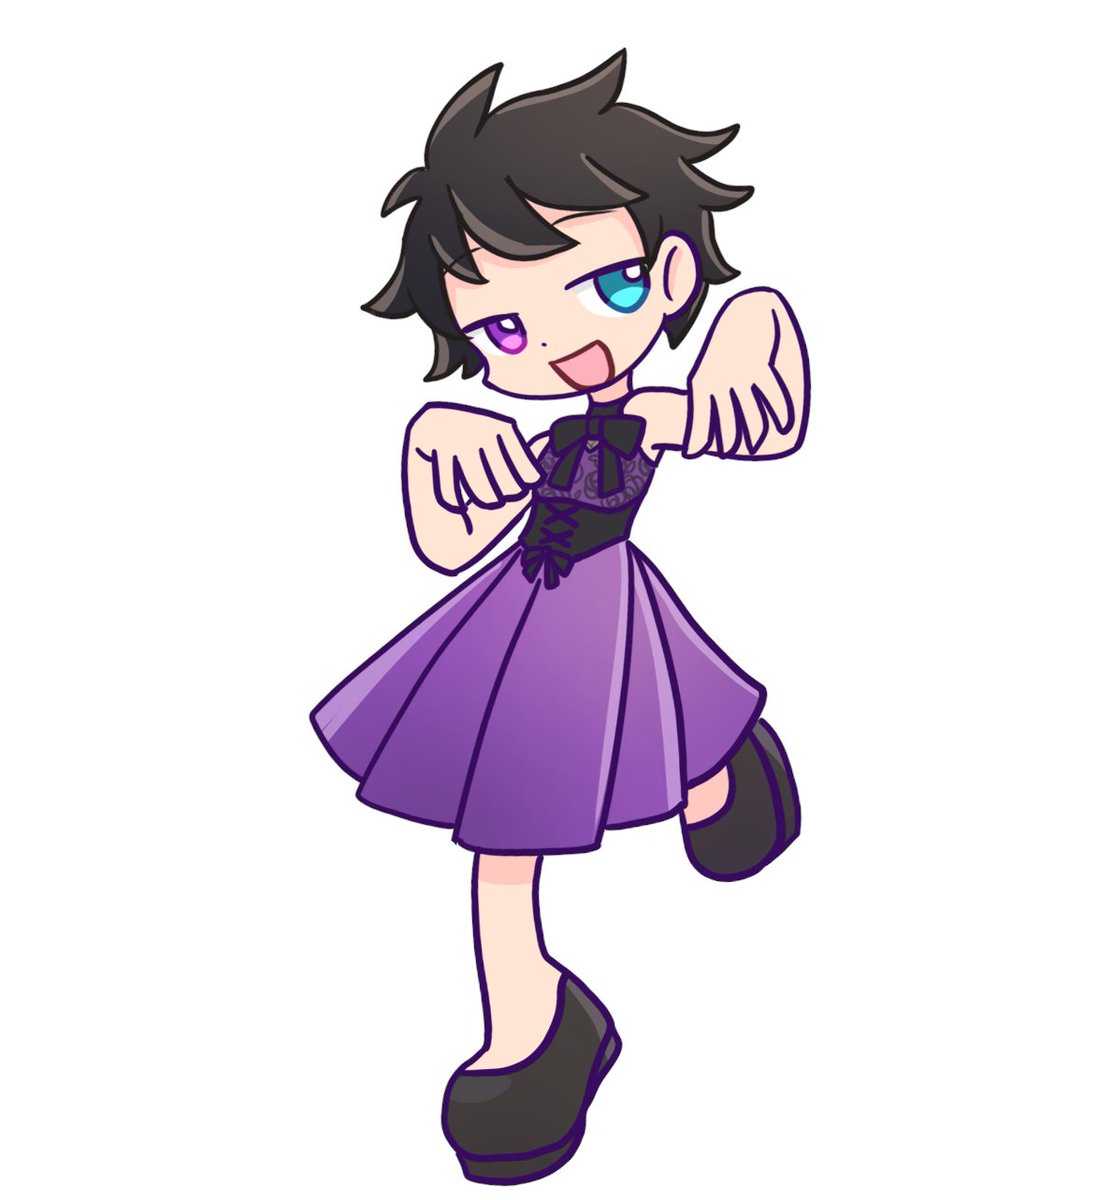 heterochromia solo dress purple dress short hair black hair smile  illustration images